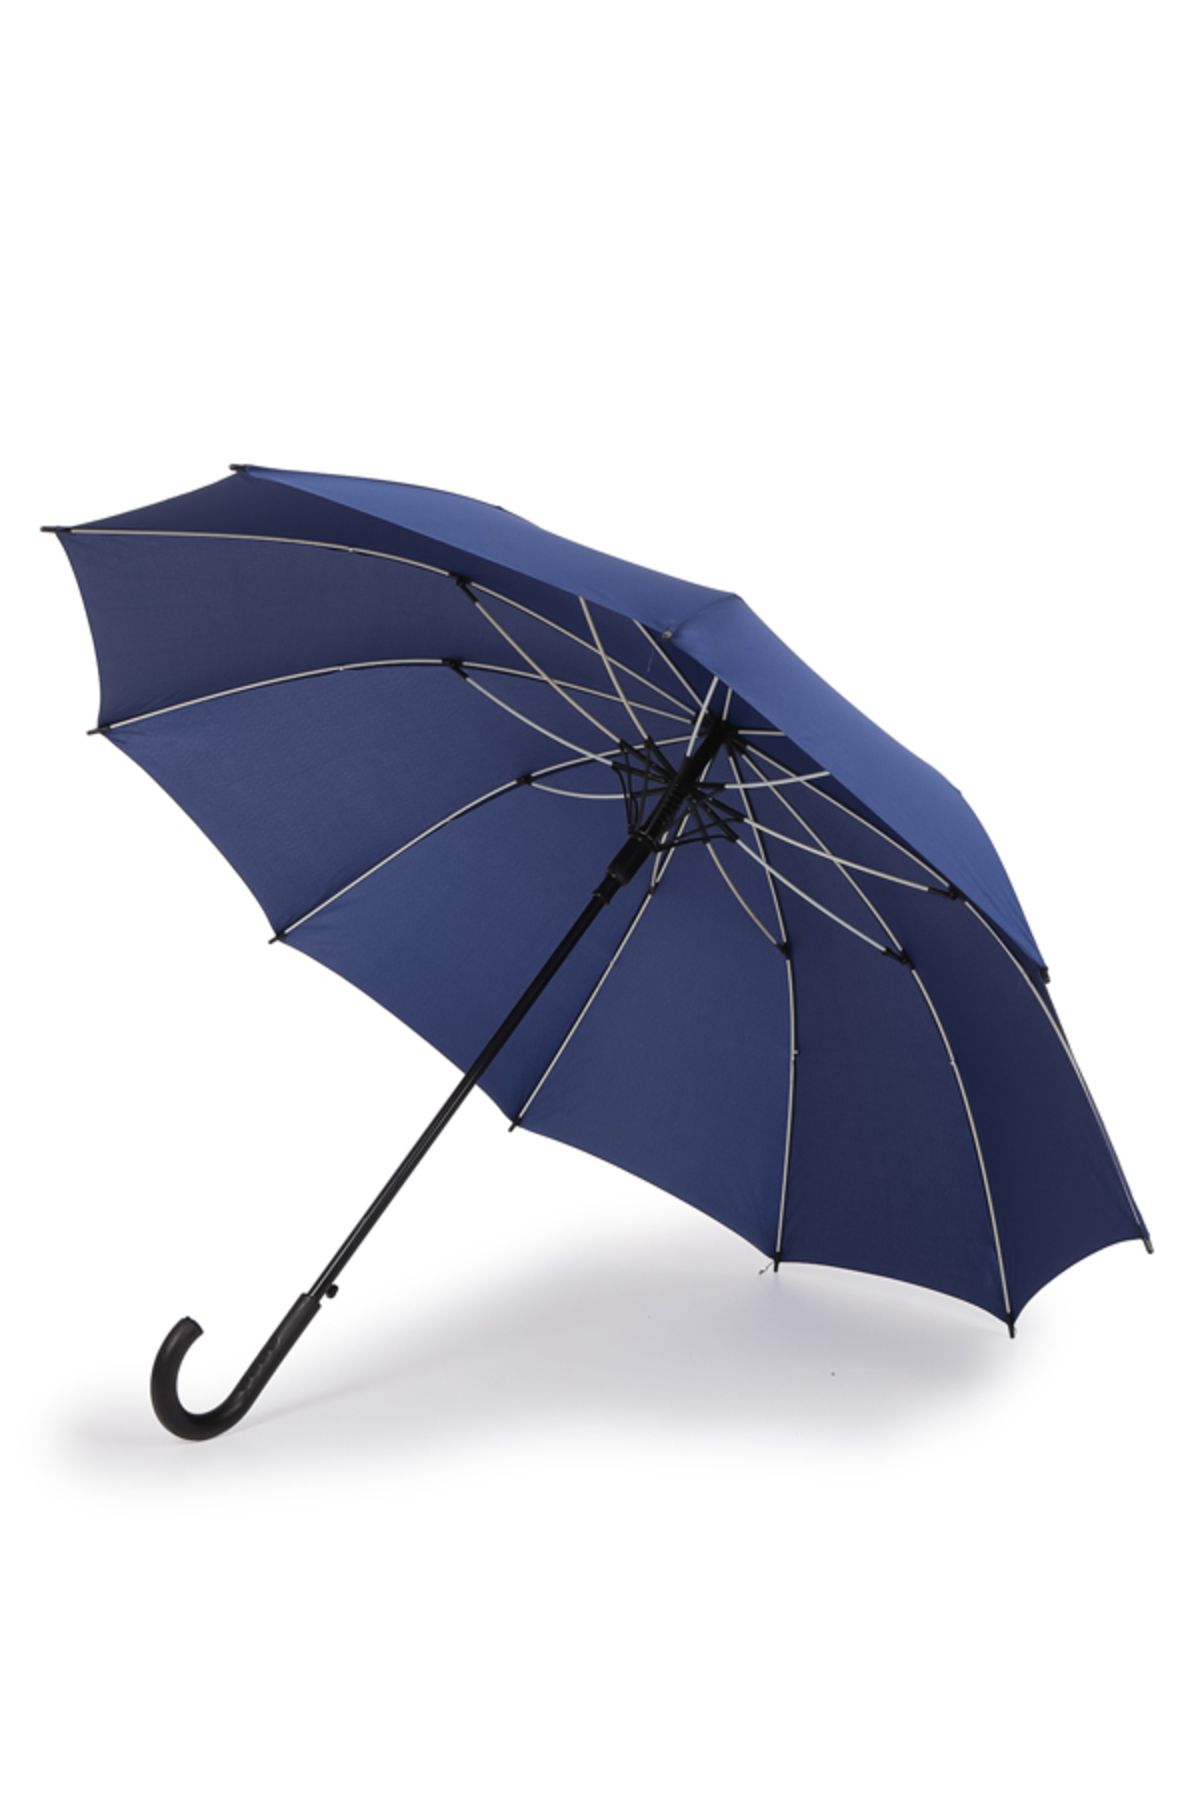 Sunlife 10 Telli Otomatik Fiberglass Protokol Baston Lacivert Yağmur Şemsiyesi [yerli Üretim]